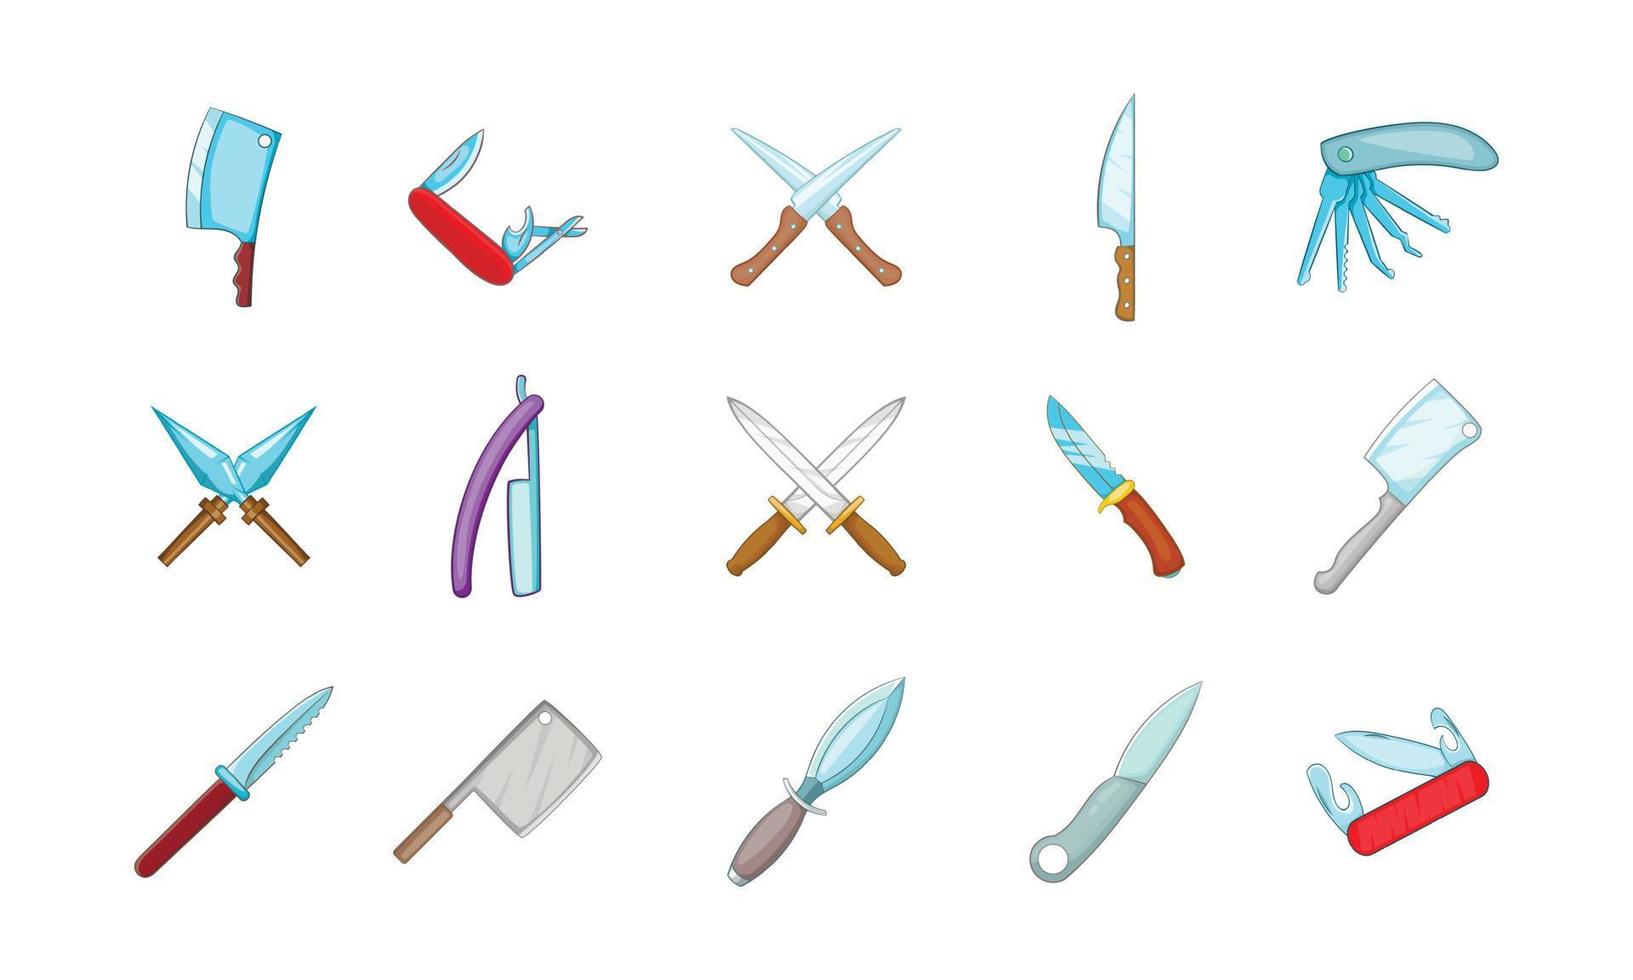 conjunto de ícones de faca, estilo cartoon vetor